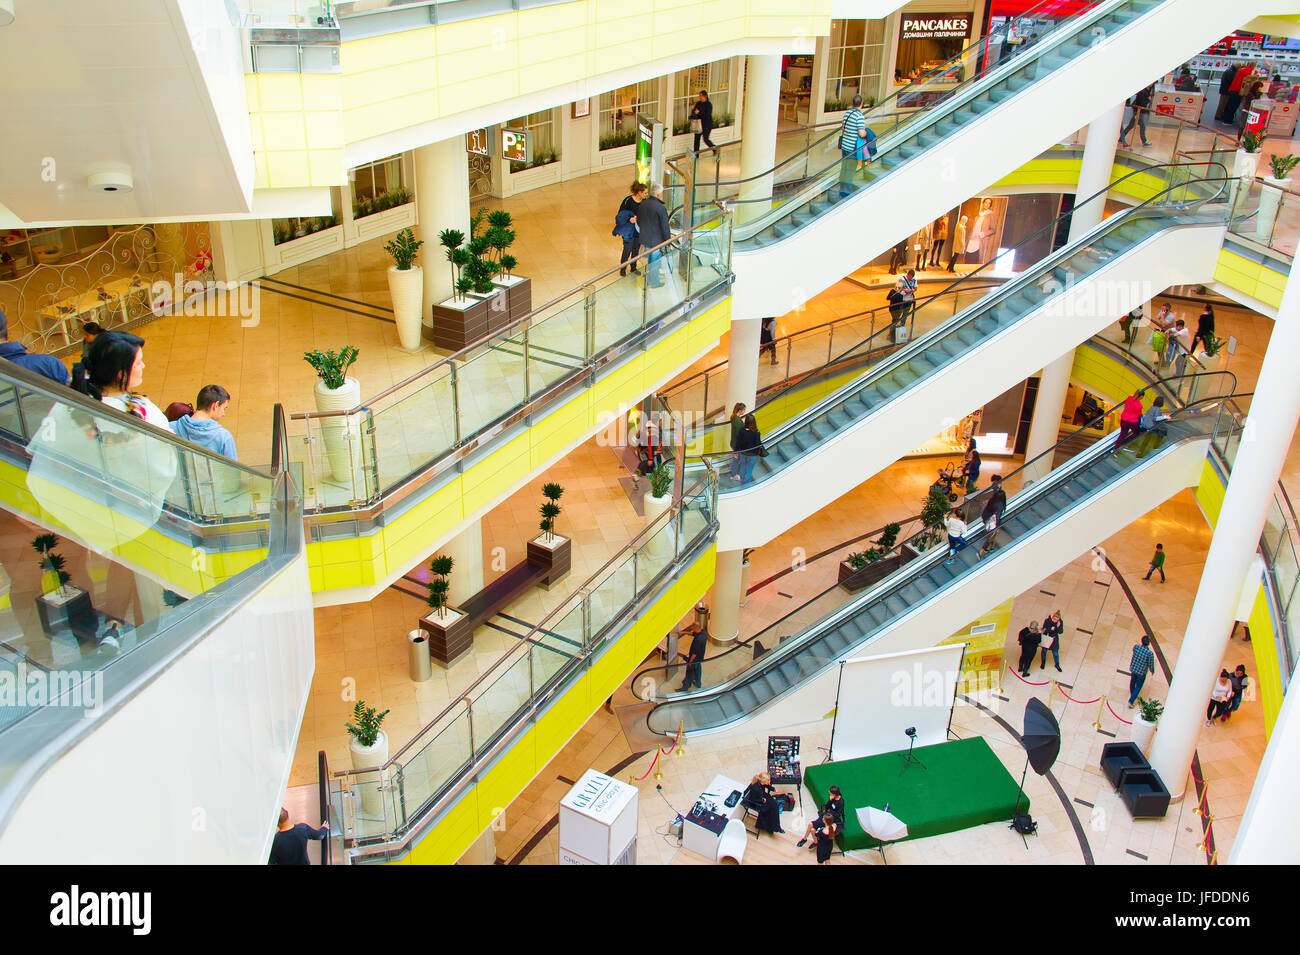 Cerdica Center shopping mall, Sofia Stock Photo - Alamy